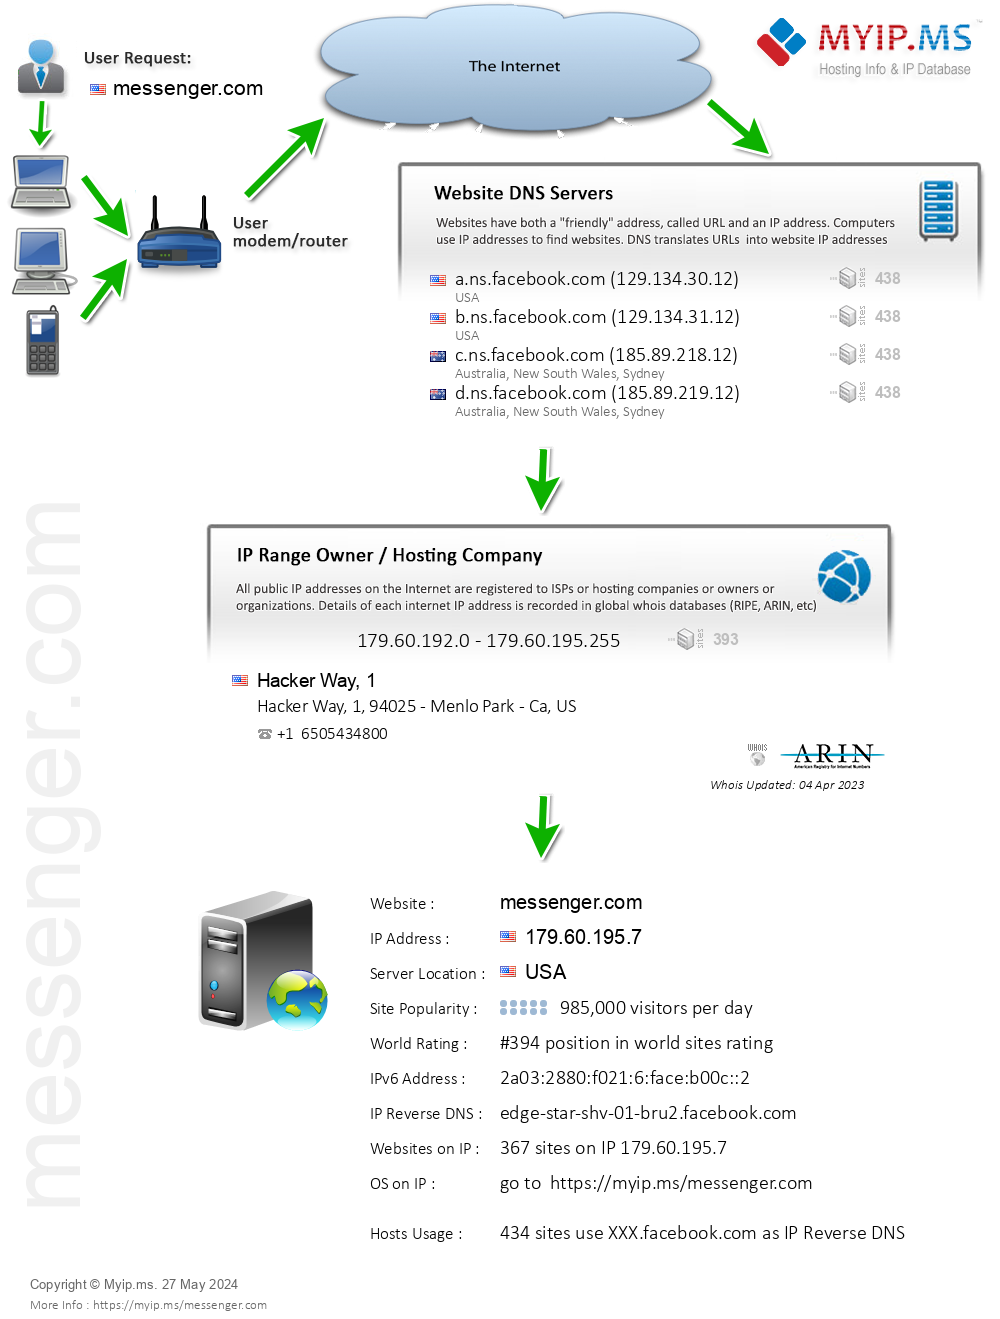 Messenger.com - Website Hosting Visual IP Diagram